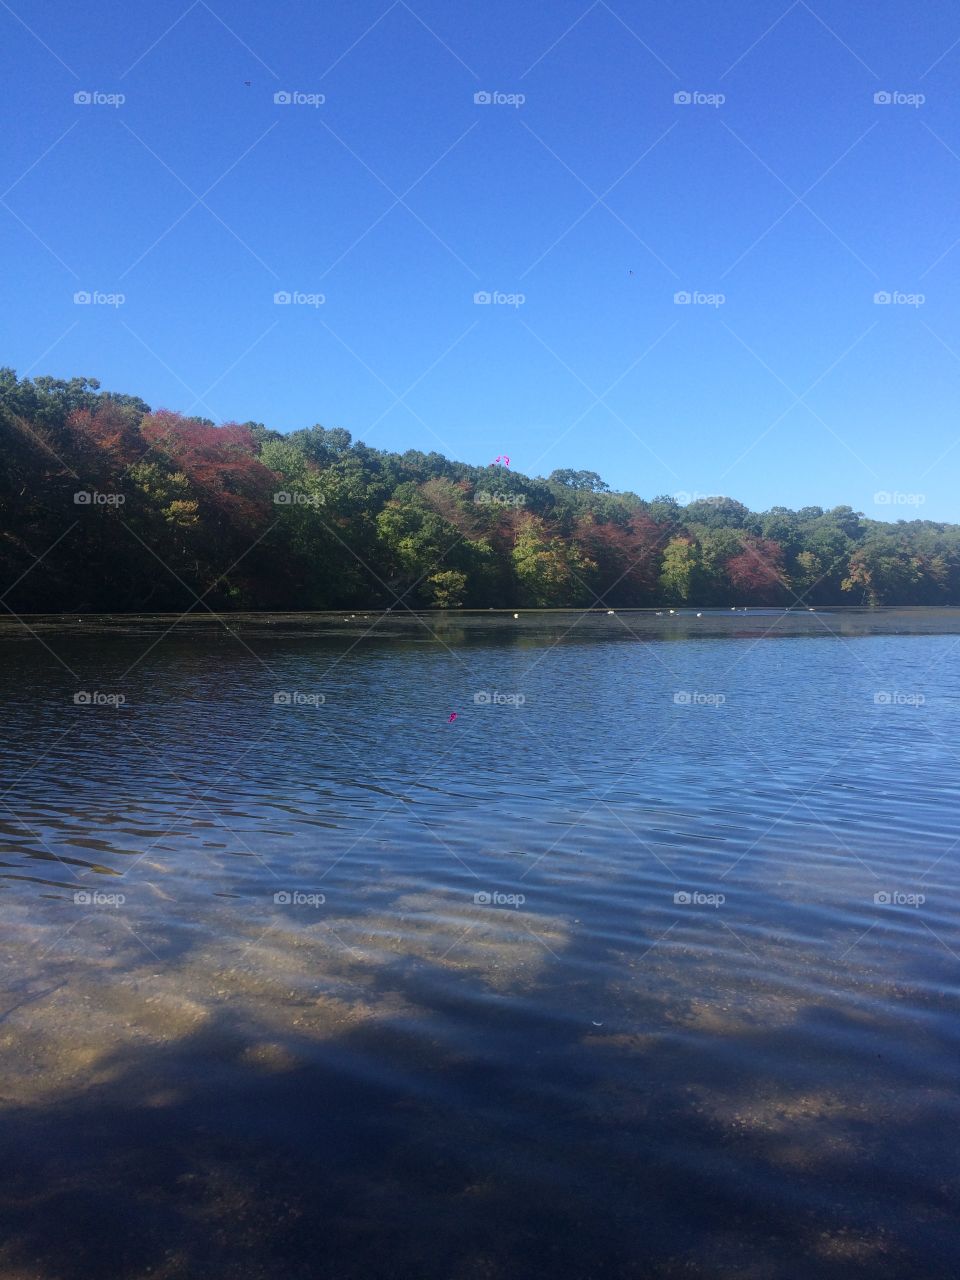 Lovely lake on a smoke break. Autumn leaves settling in